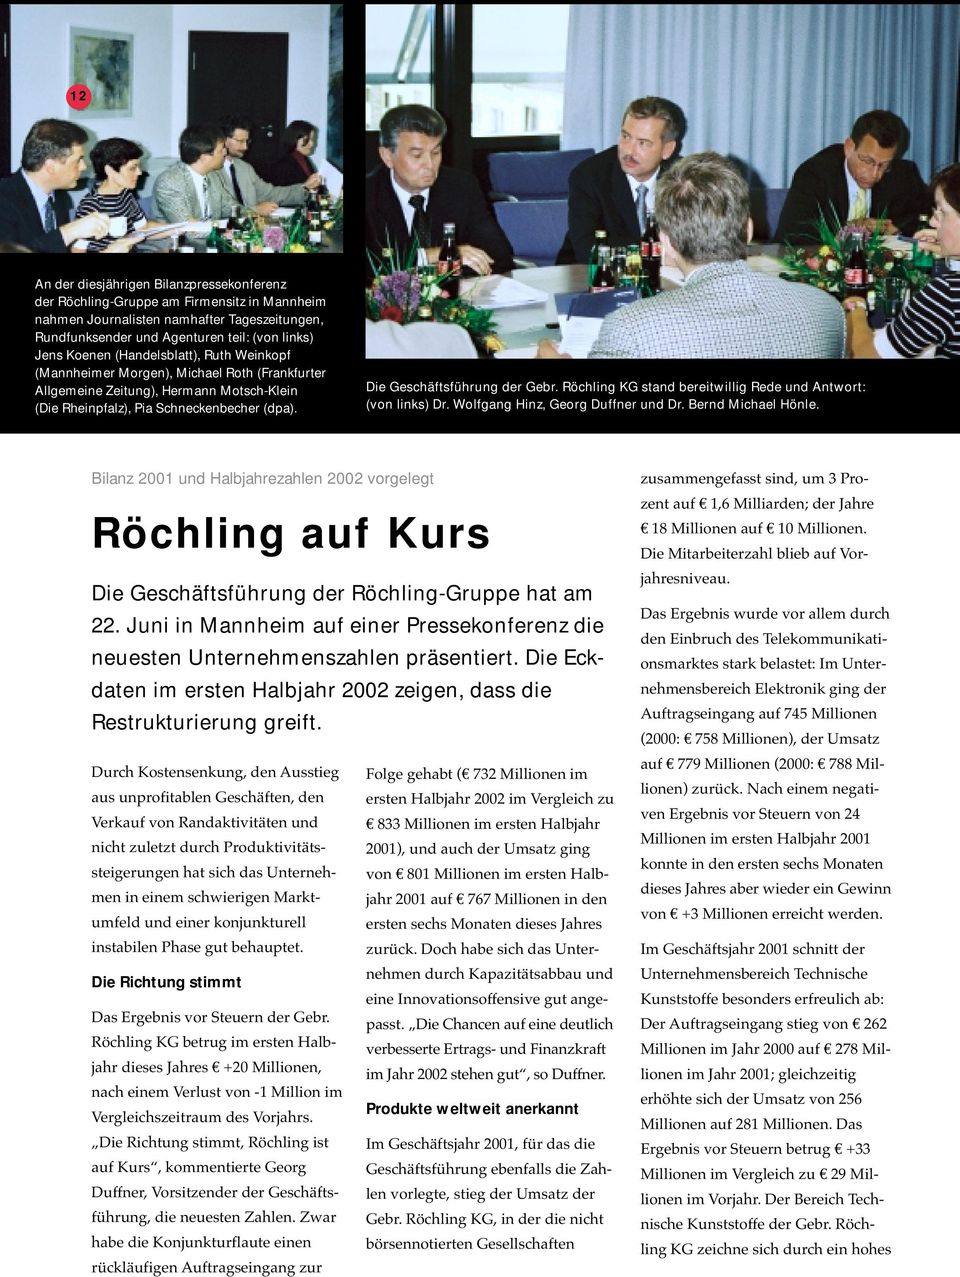 Röchling KG stand bereitwillig Rede und Antwort: (von links) Dr. Wolfgang Hinz, Georg Duffner und Dr. Bernd Michael Hönle.